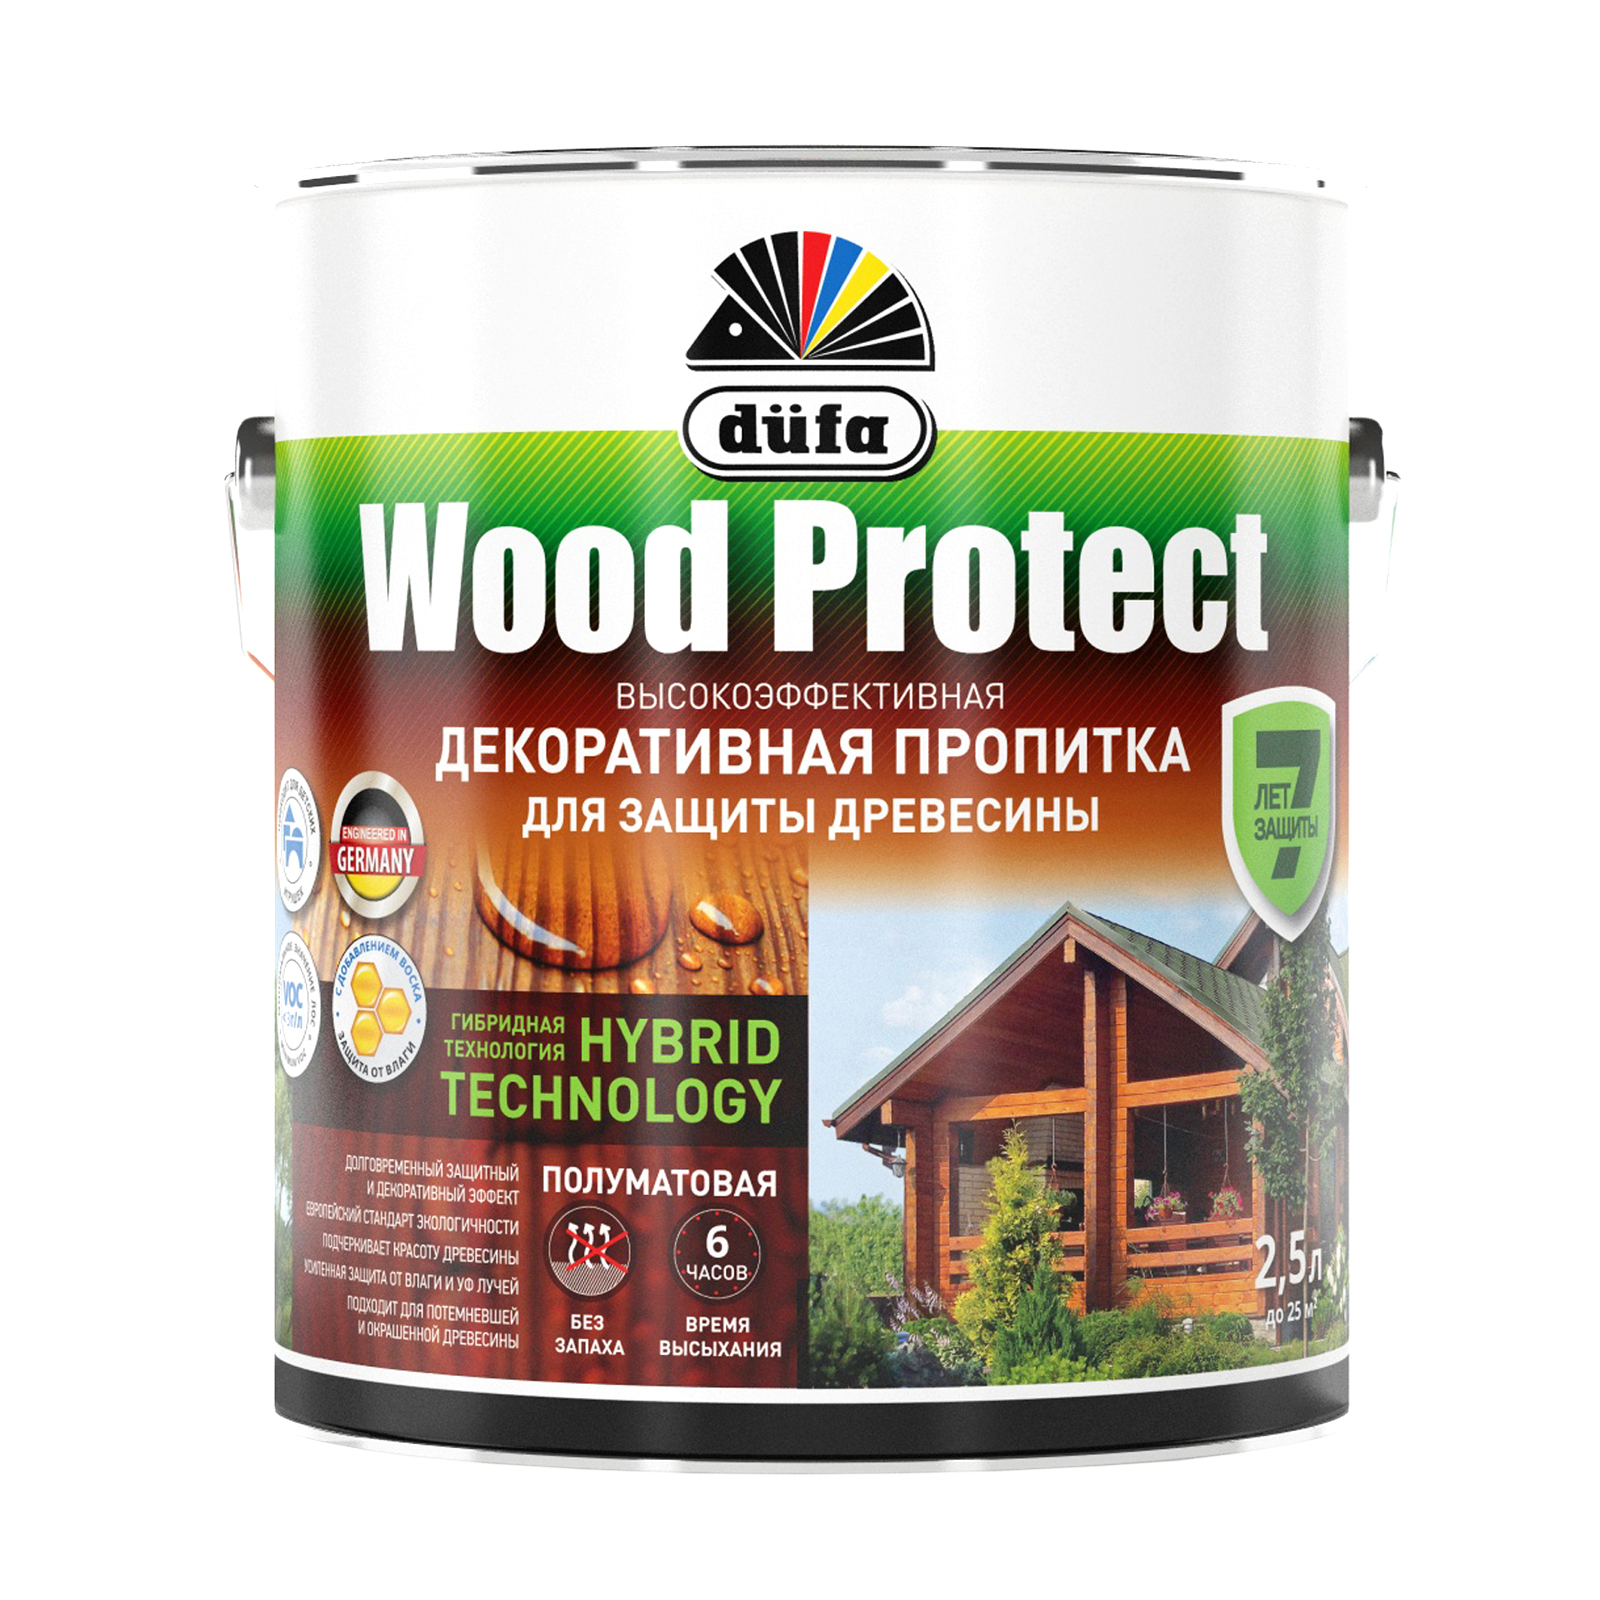 Пропитка для древесины Dufa Wood Protect палисандр, 2,5 л антисептик wood protect палисандр 10 л